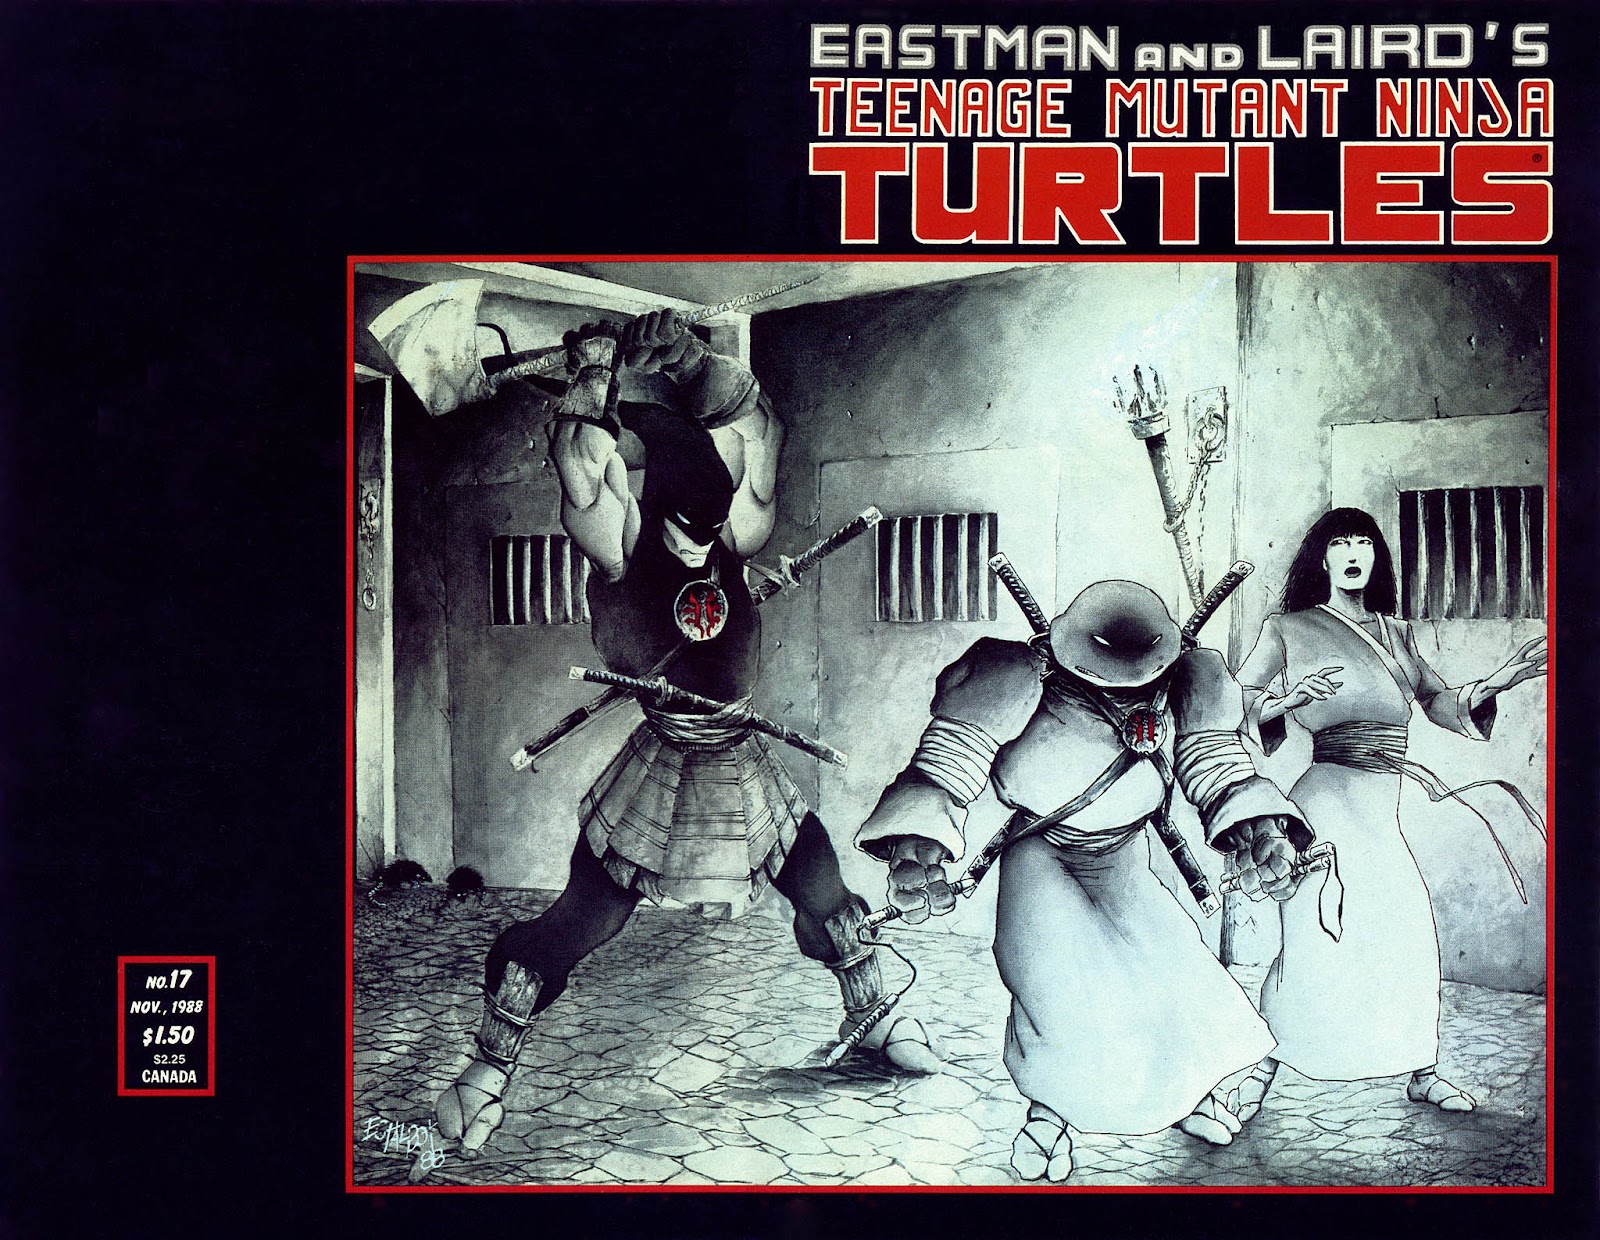 Teenage Mutant Ninja Turtles (1984) Issue #17 #17 - English 2